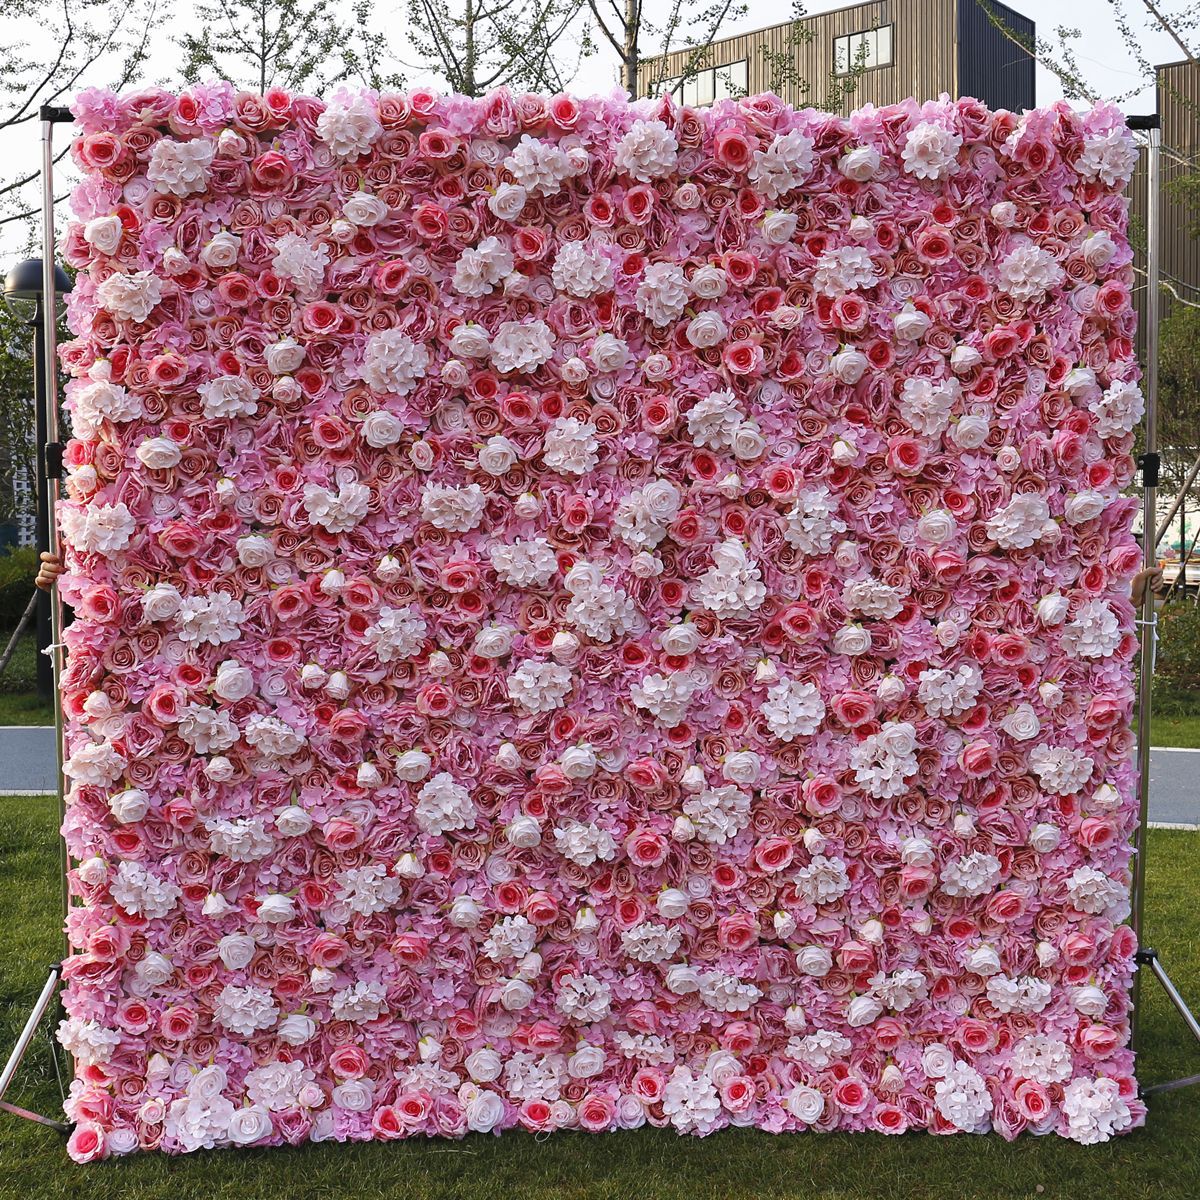  Хуримын даавууны доод симуляци цэцгийн ханын дэвсгэр хананы кино студи дэвсгэр торго цэцгийн эгнээ Ургамал хананы цэцэг хана 